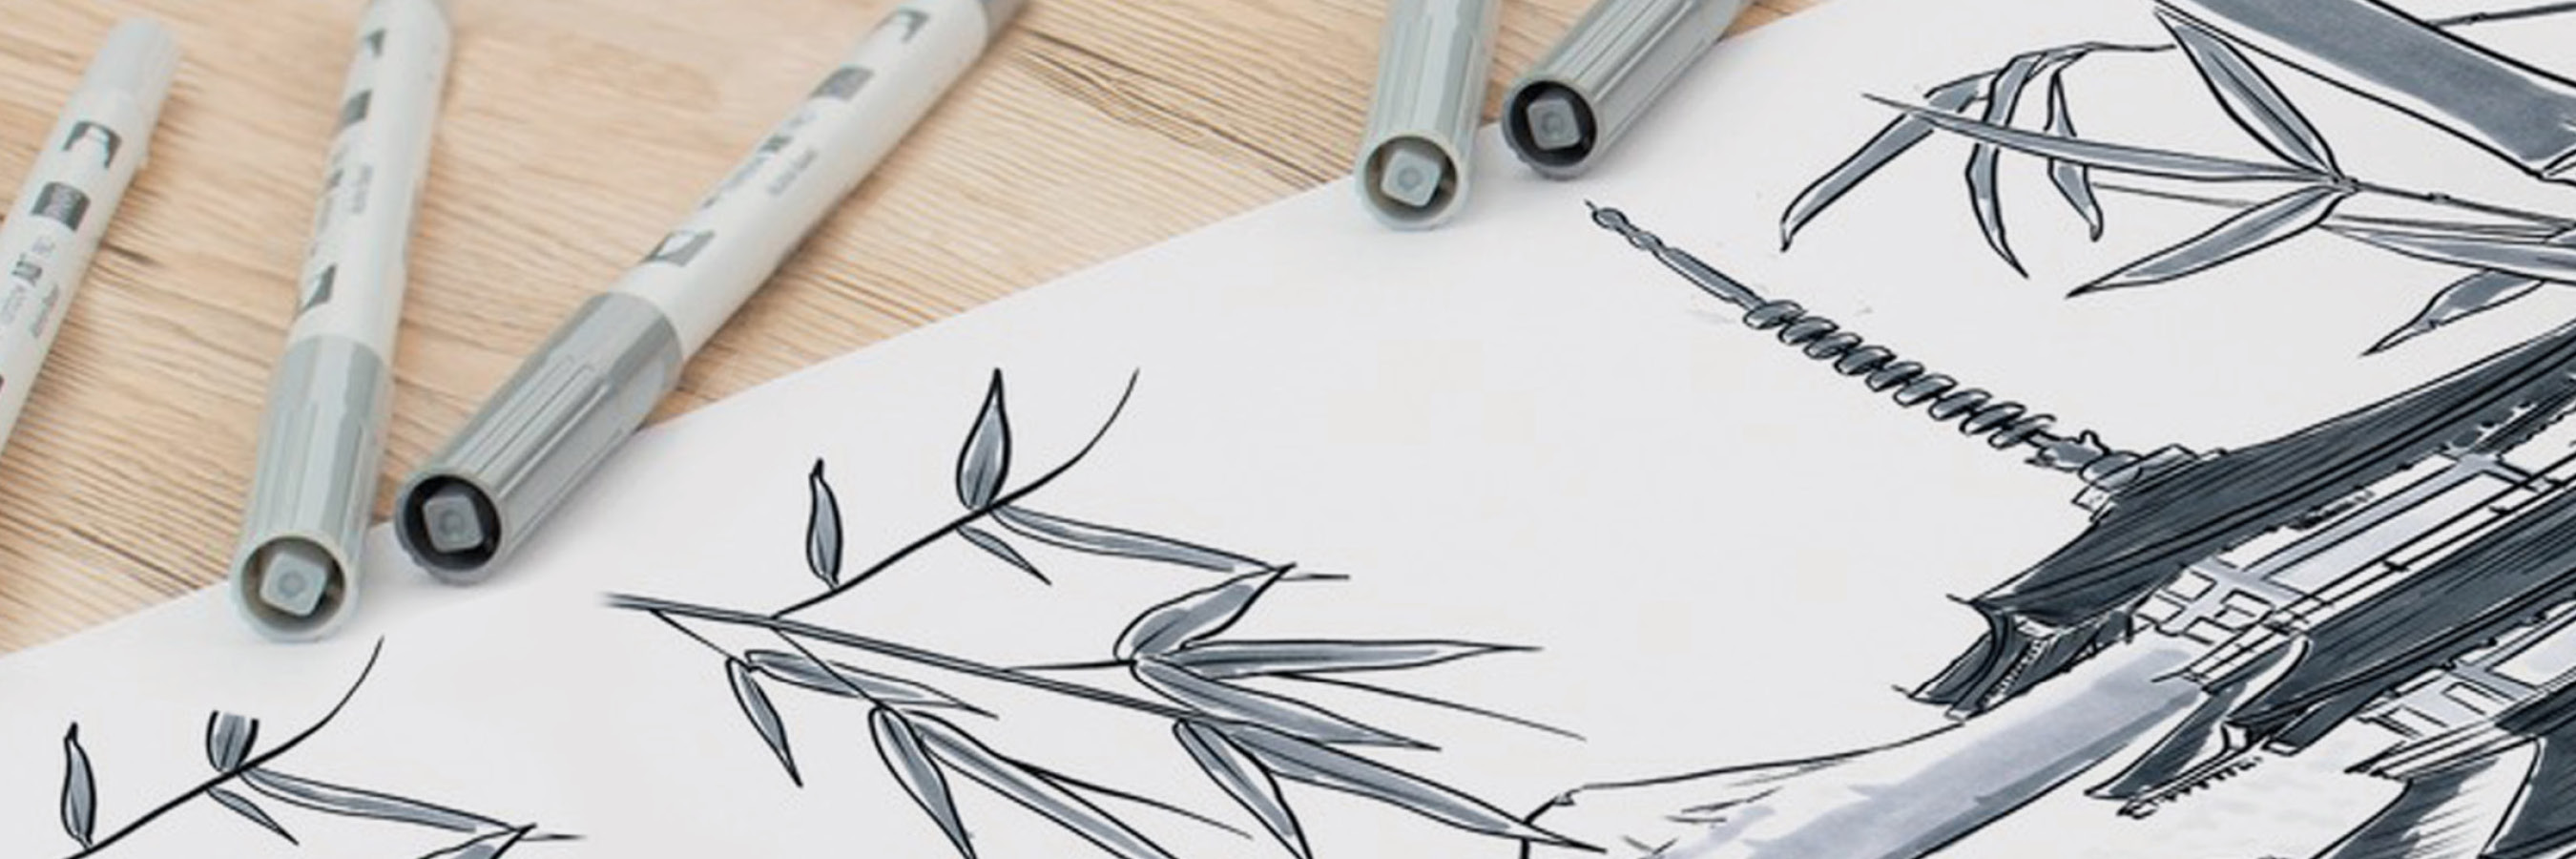 How to Draw Using a Pentel Brush Pen » Mega Pencil-saigonsouth.com.vn